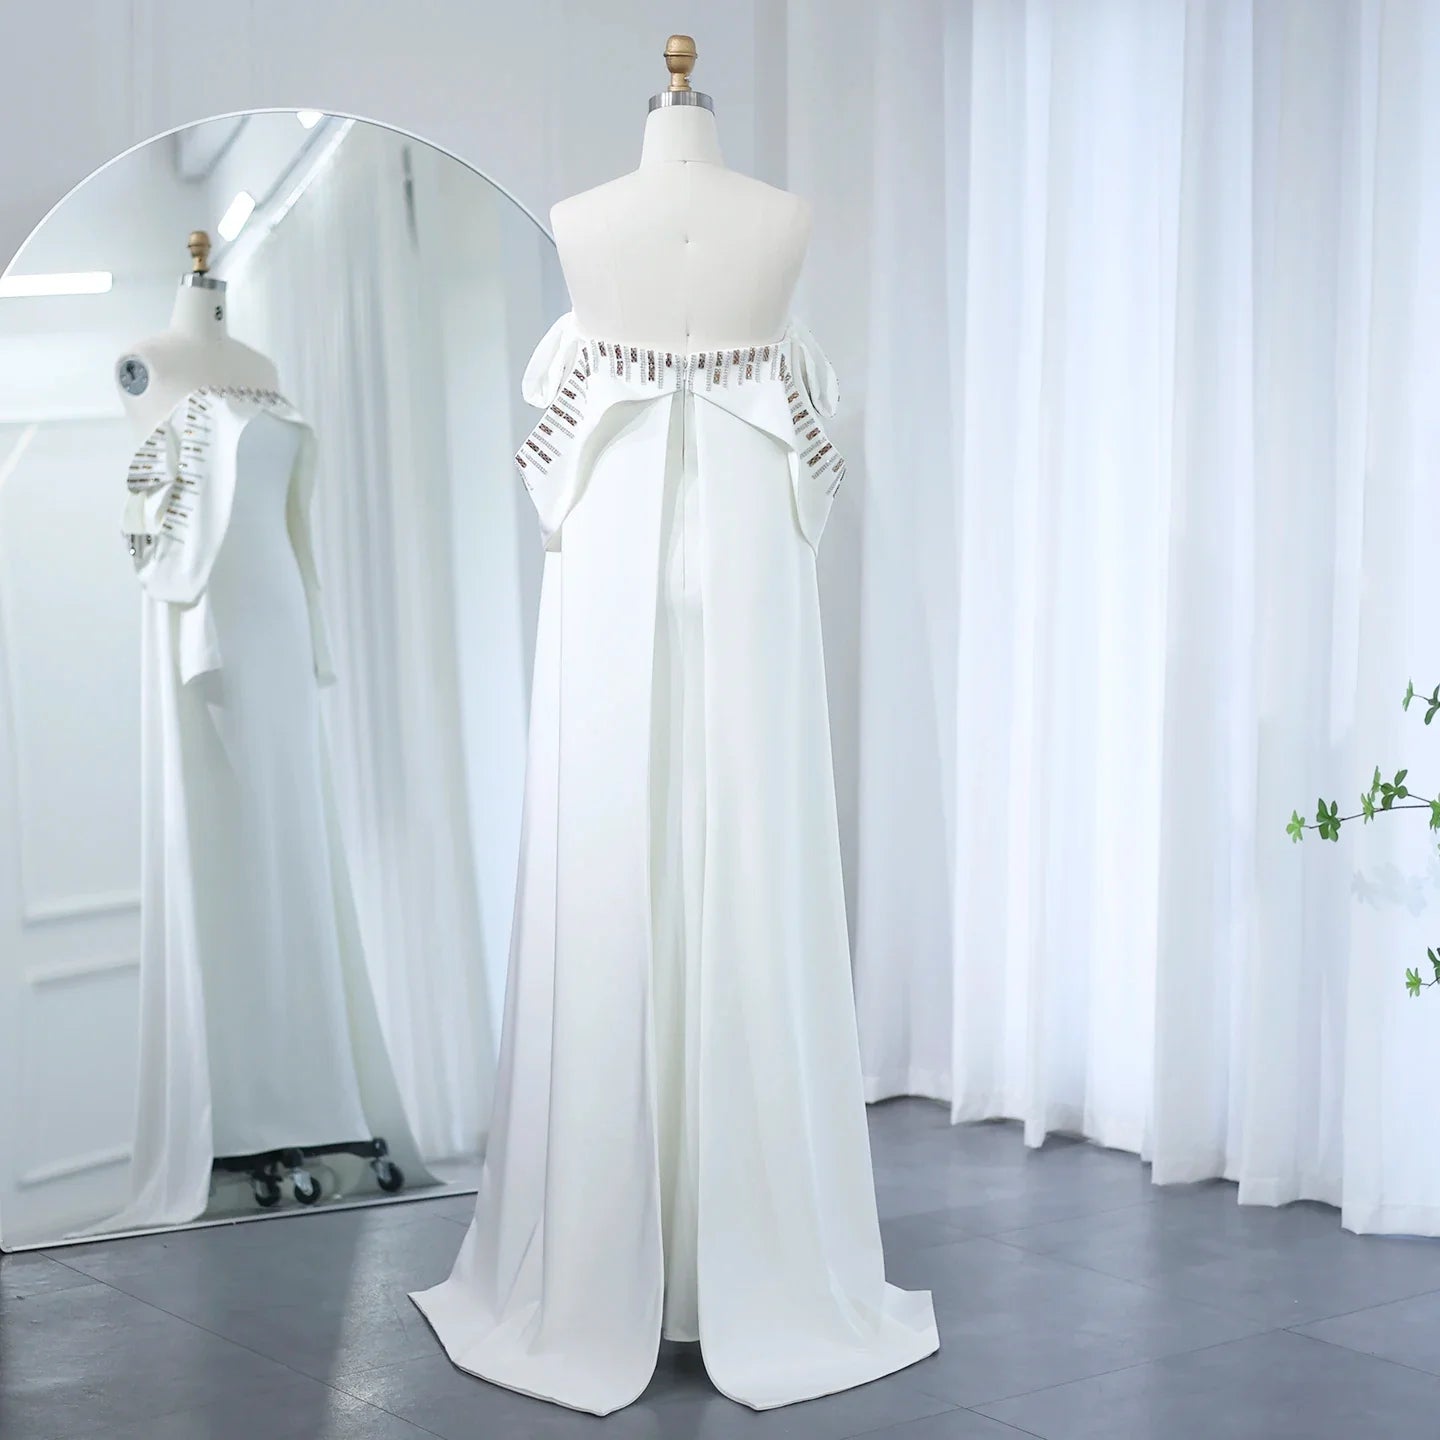 אלגנטית מחוץ לבנה לבנה שמלת ערב דובאי עם שרוולים ארוכים מהכתף שמלות מסיבת חתונה ערבית